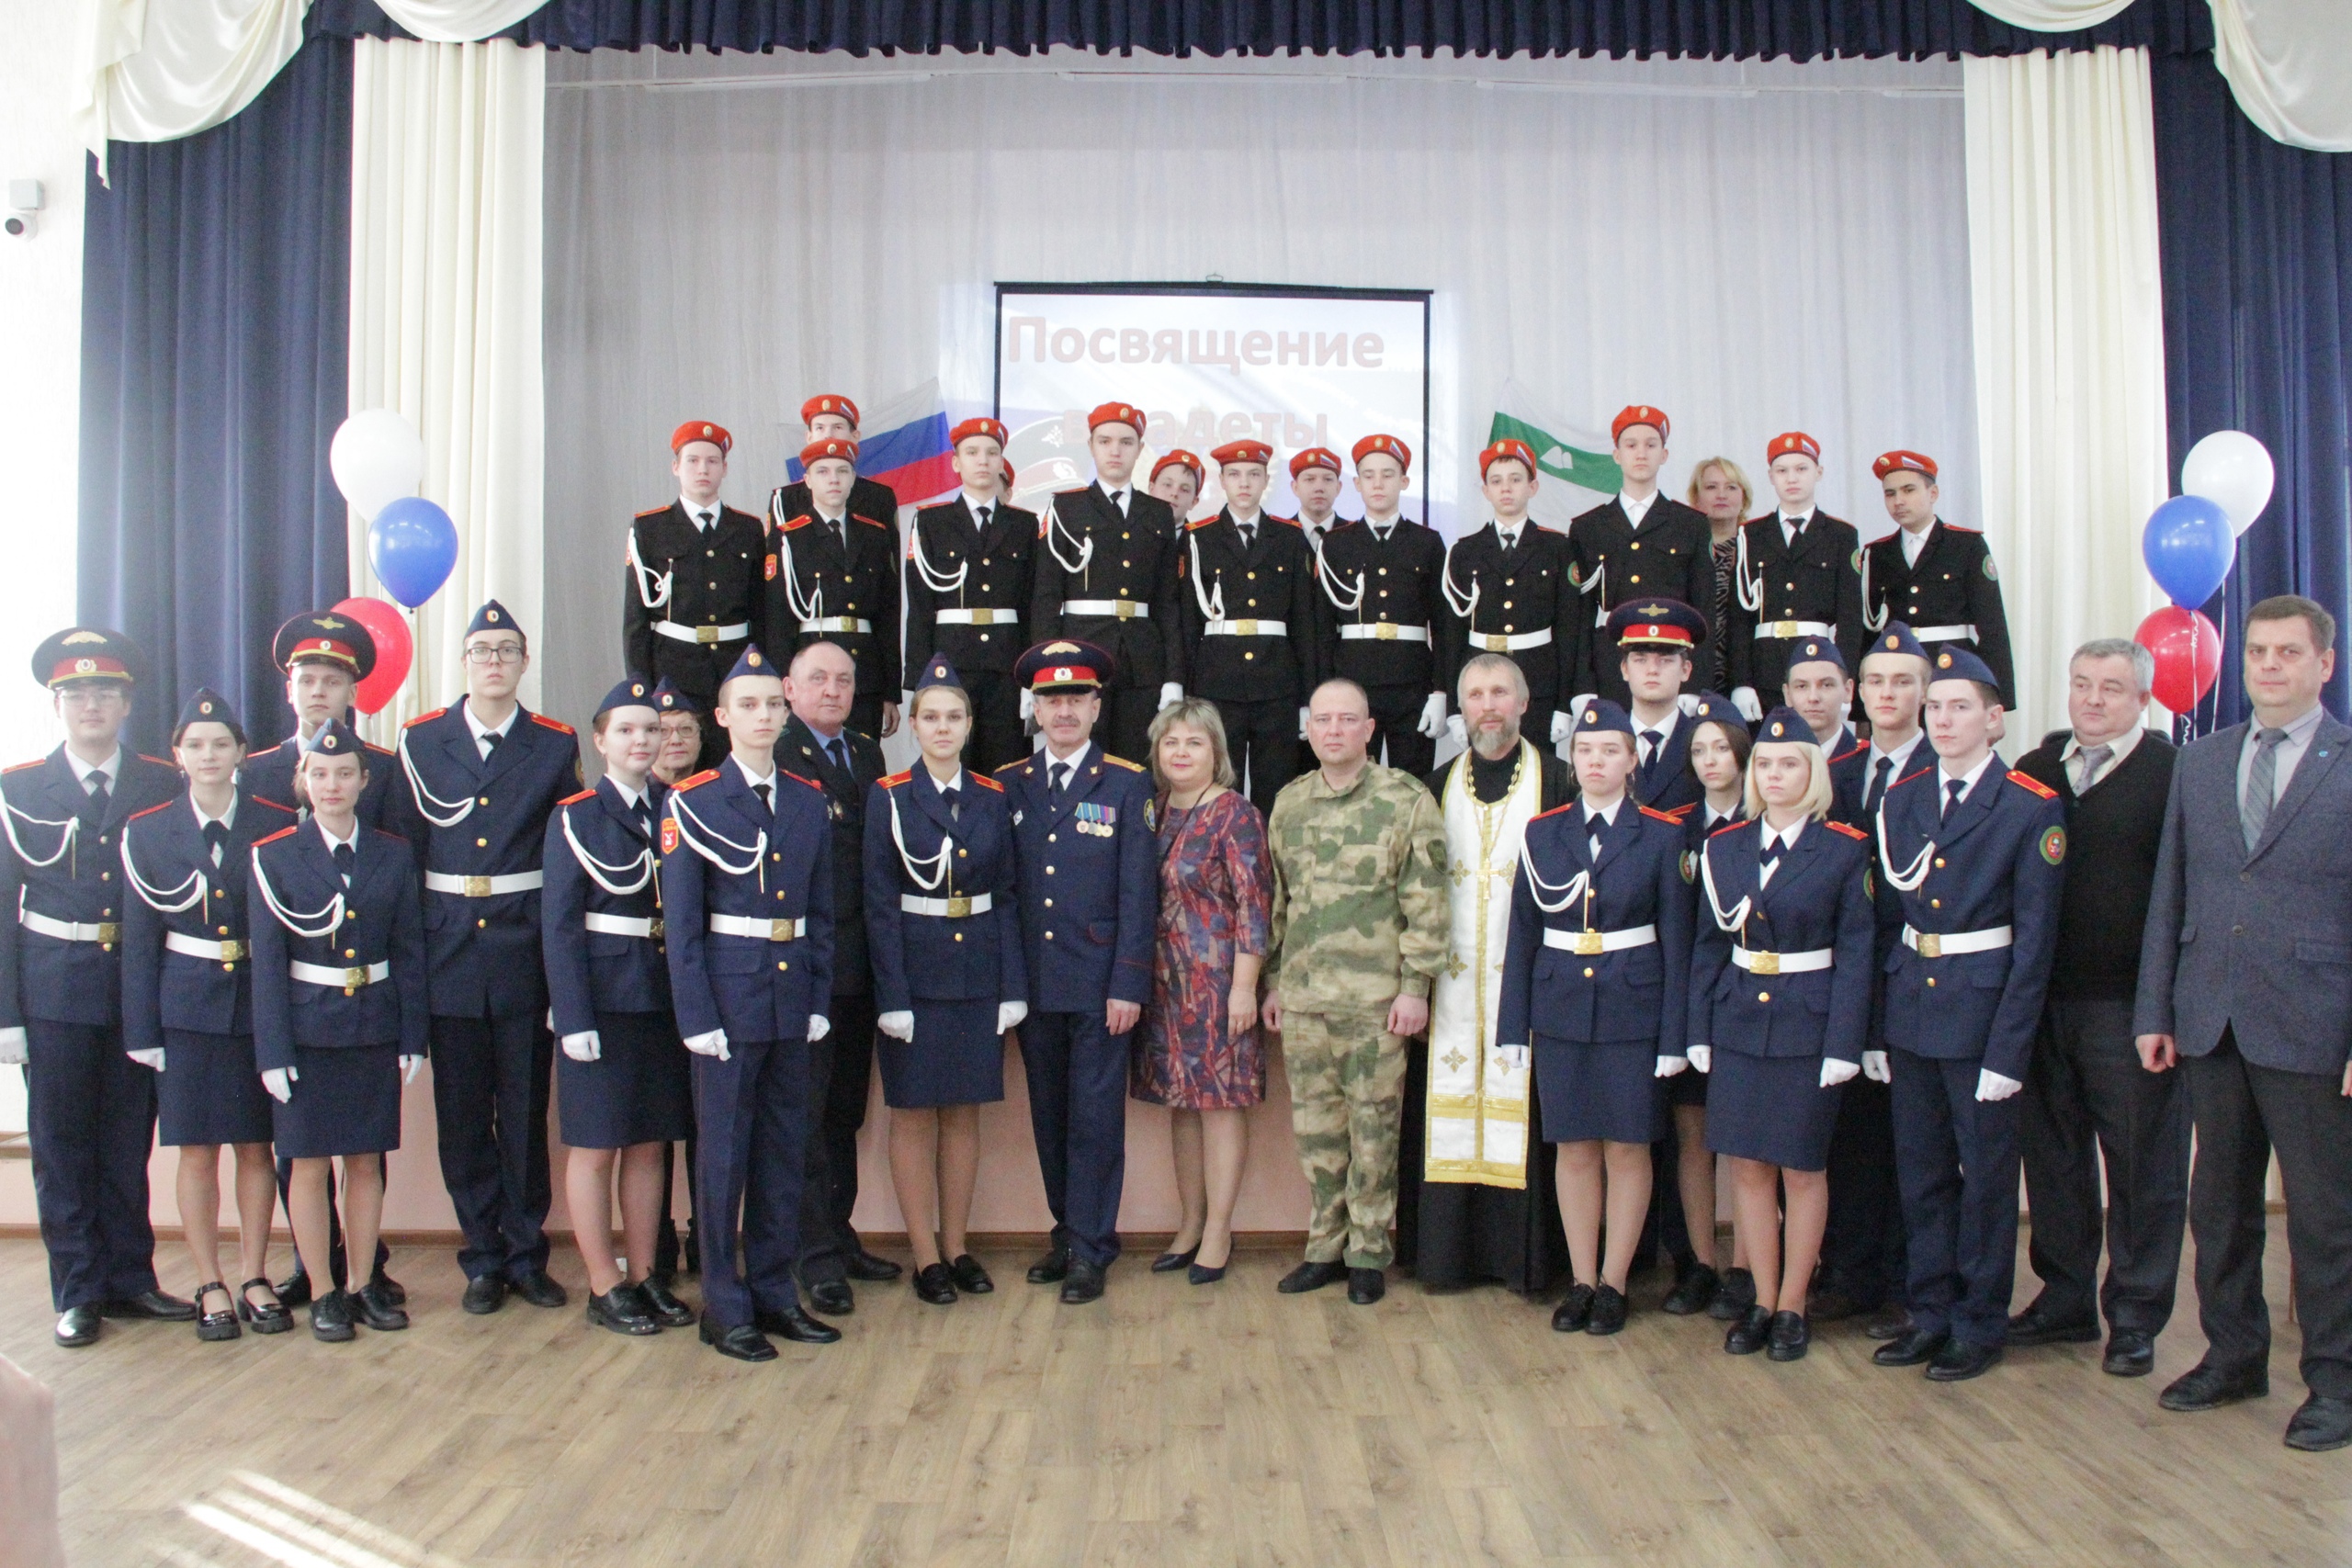 Посвящение школьников в кадеты Следственного комитета Российской Федерации.